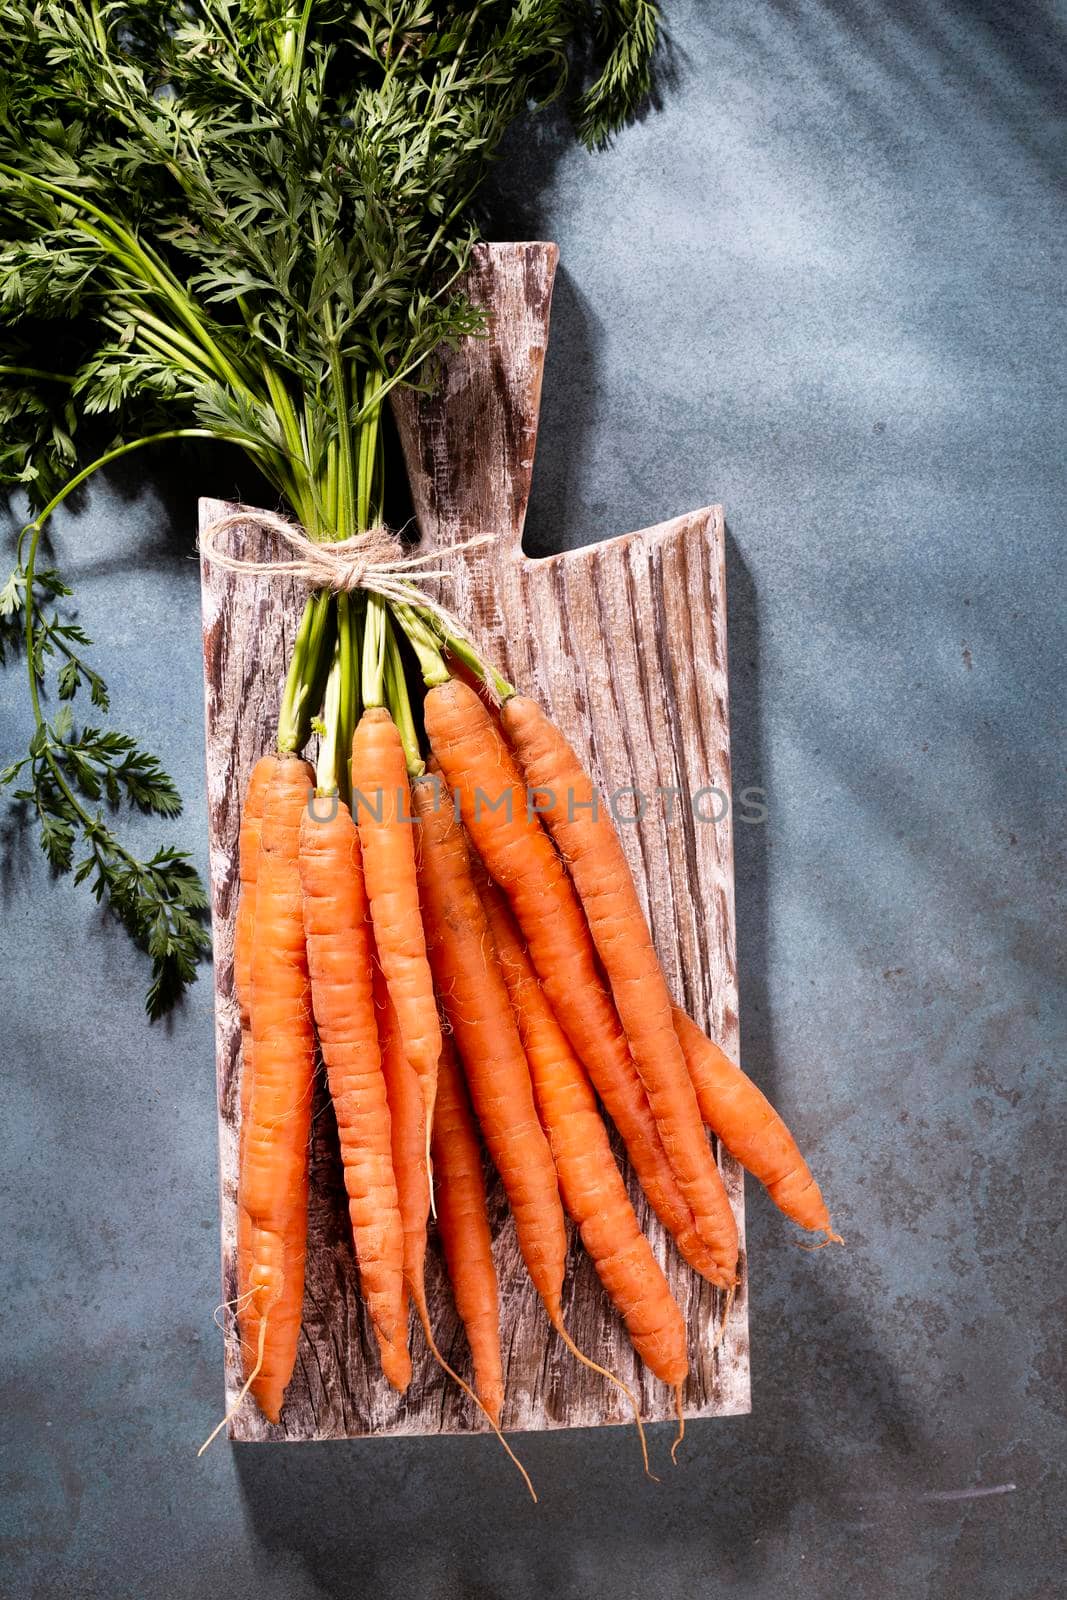 Organic carrot on wood cutting board, closeup photo.